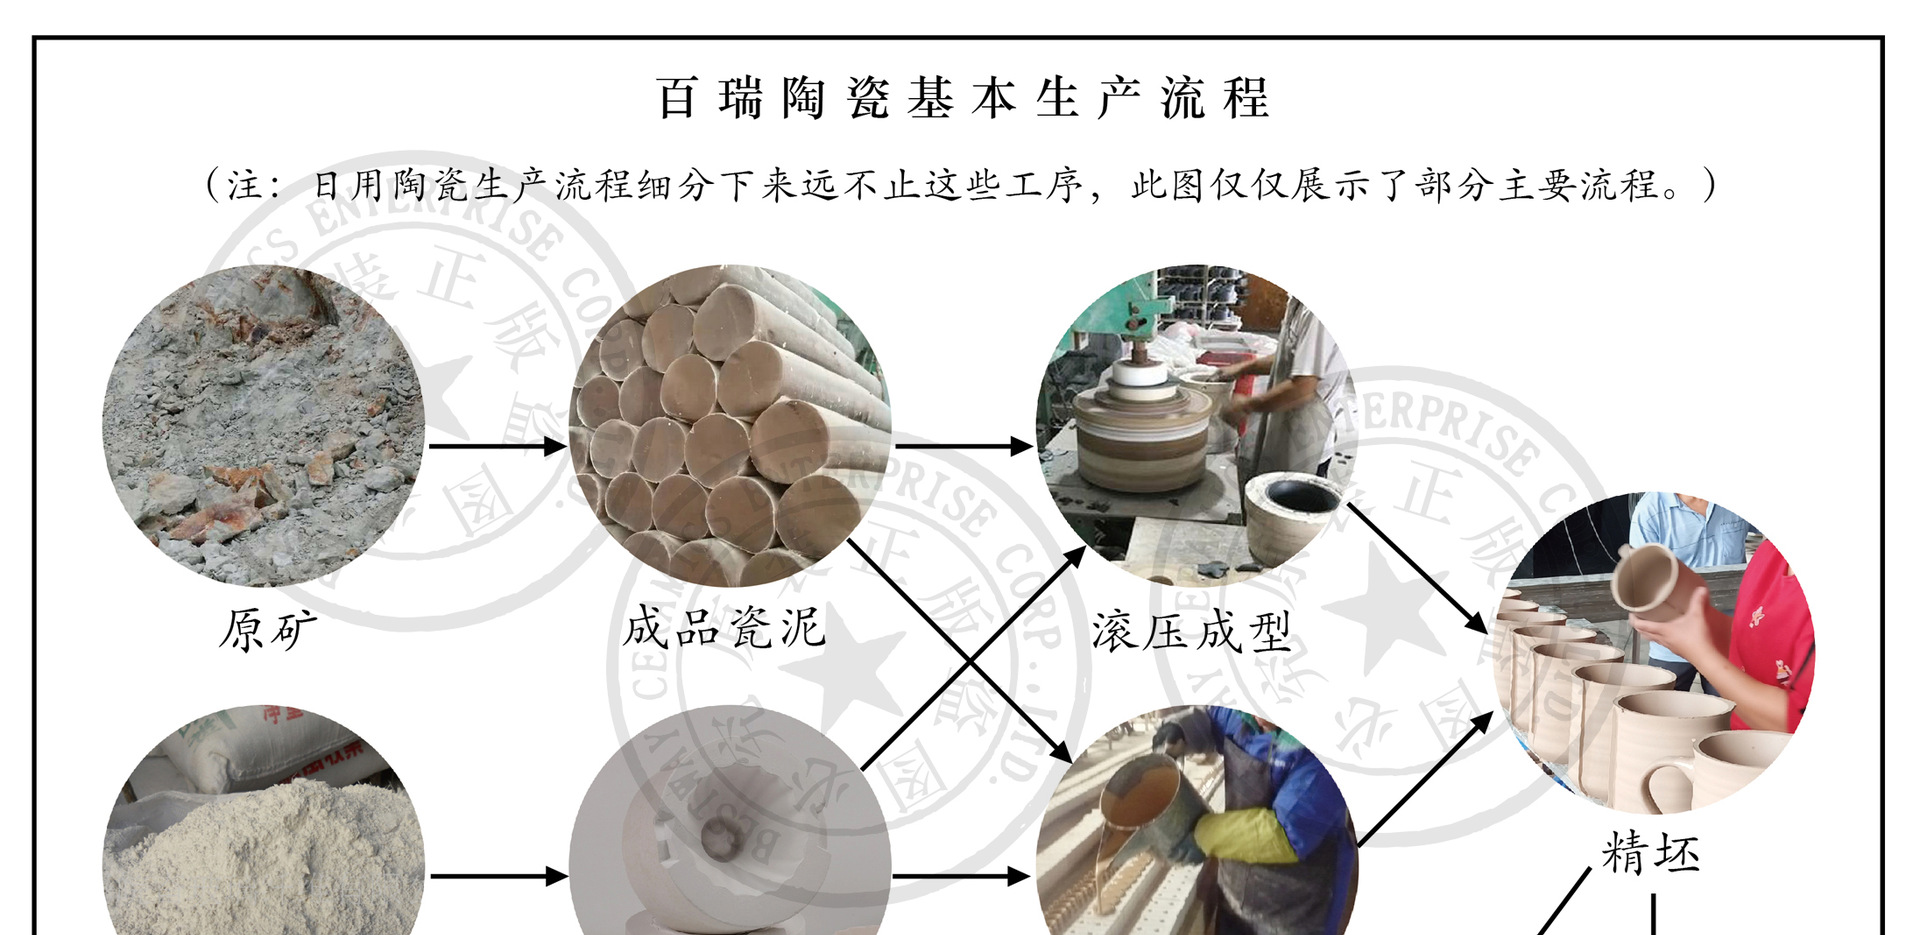 百瑞陶瓷基本生产流程1.jpg